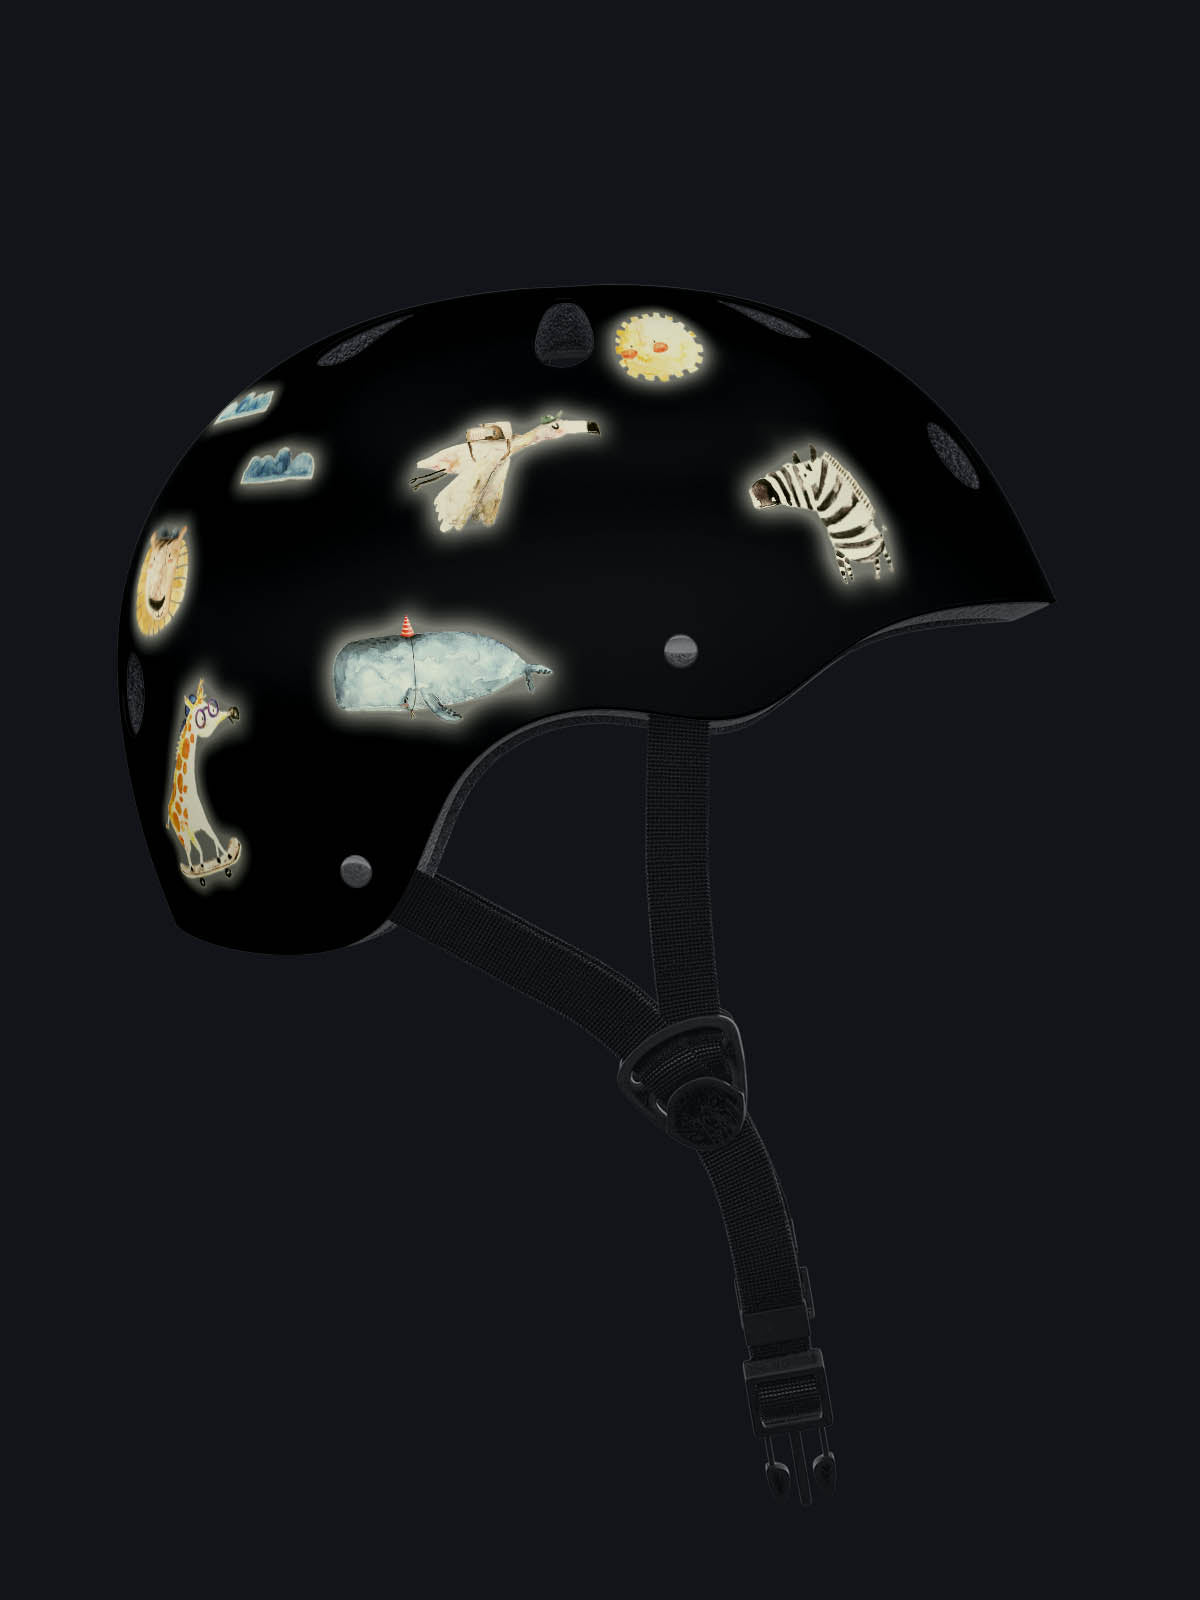 Tier Refektoren Sticker auf einem helm bei Nacht. Auf dem Helm reflektieren Wal, Flamingo, Löwe, Sonne, Wolken und Giraffe